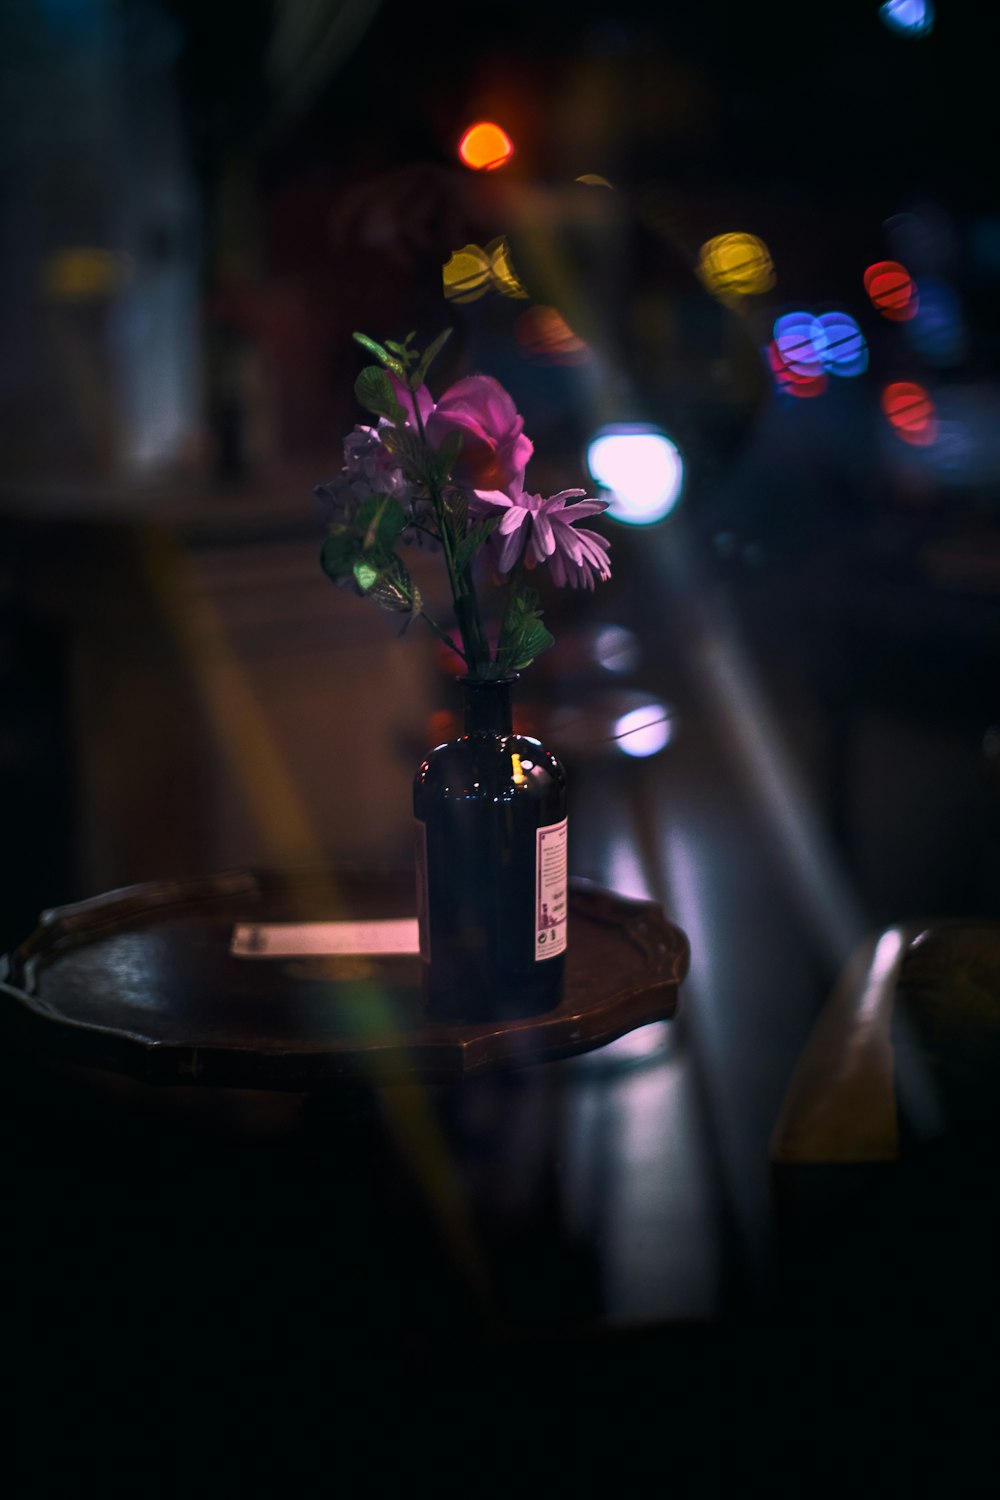 purple flowers in glass bottle on table